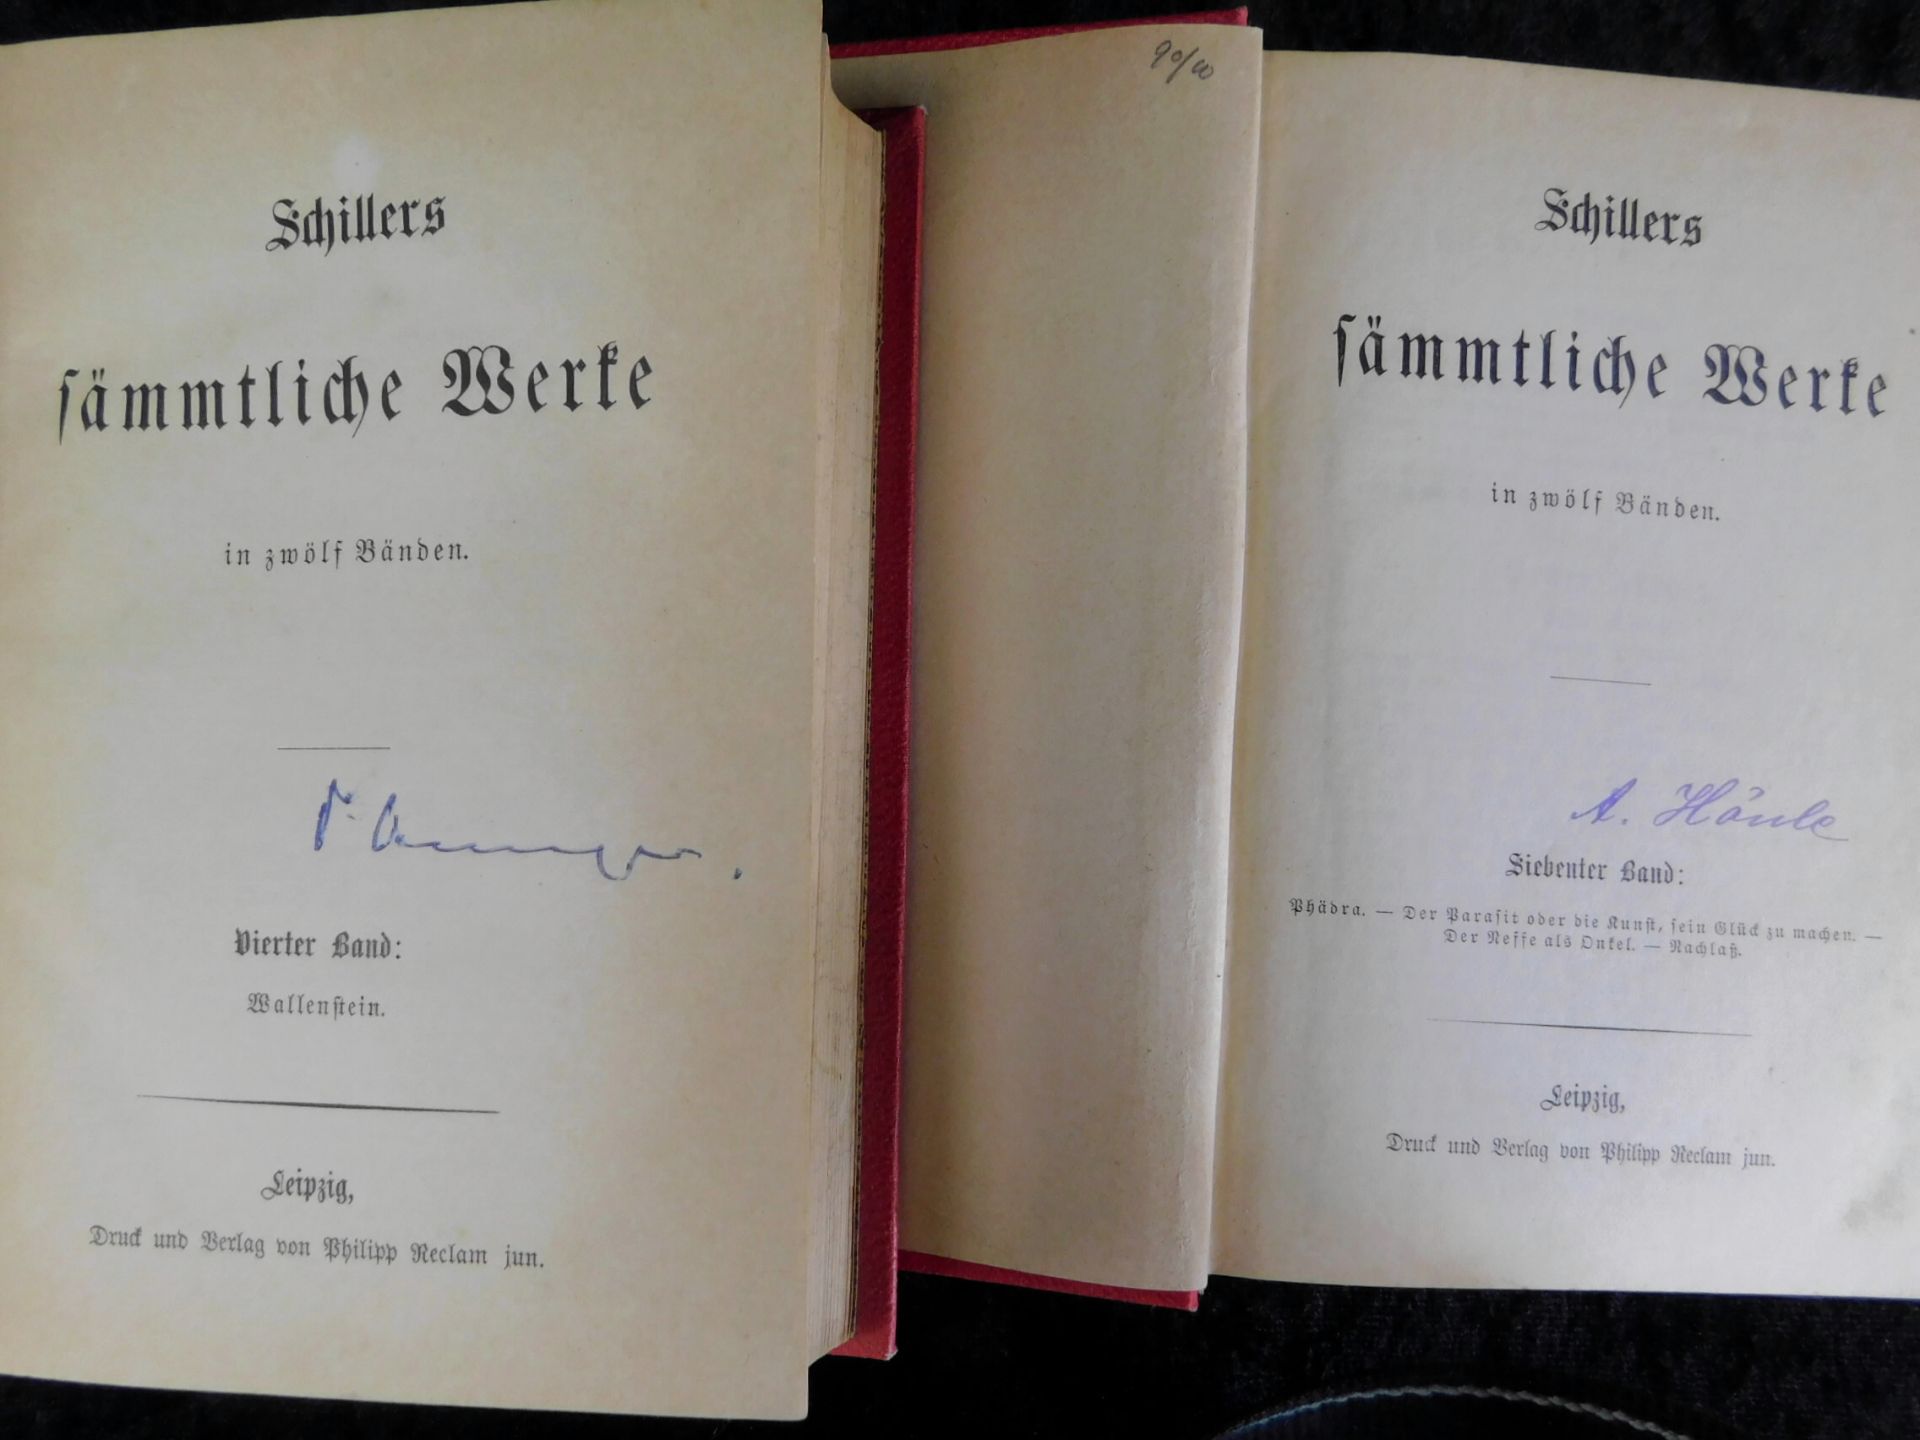 Schiller, "Schillers sämtliche Werke", alle 12 in 4 Bänden, Druck und Verlag Philipp Reclam ju - Bild 3 aus 3